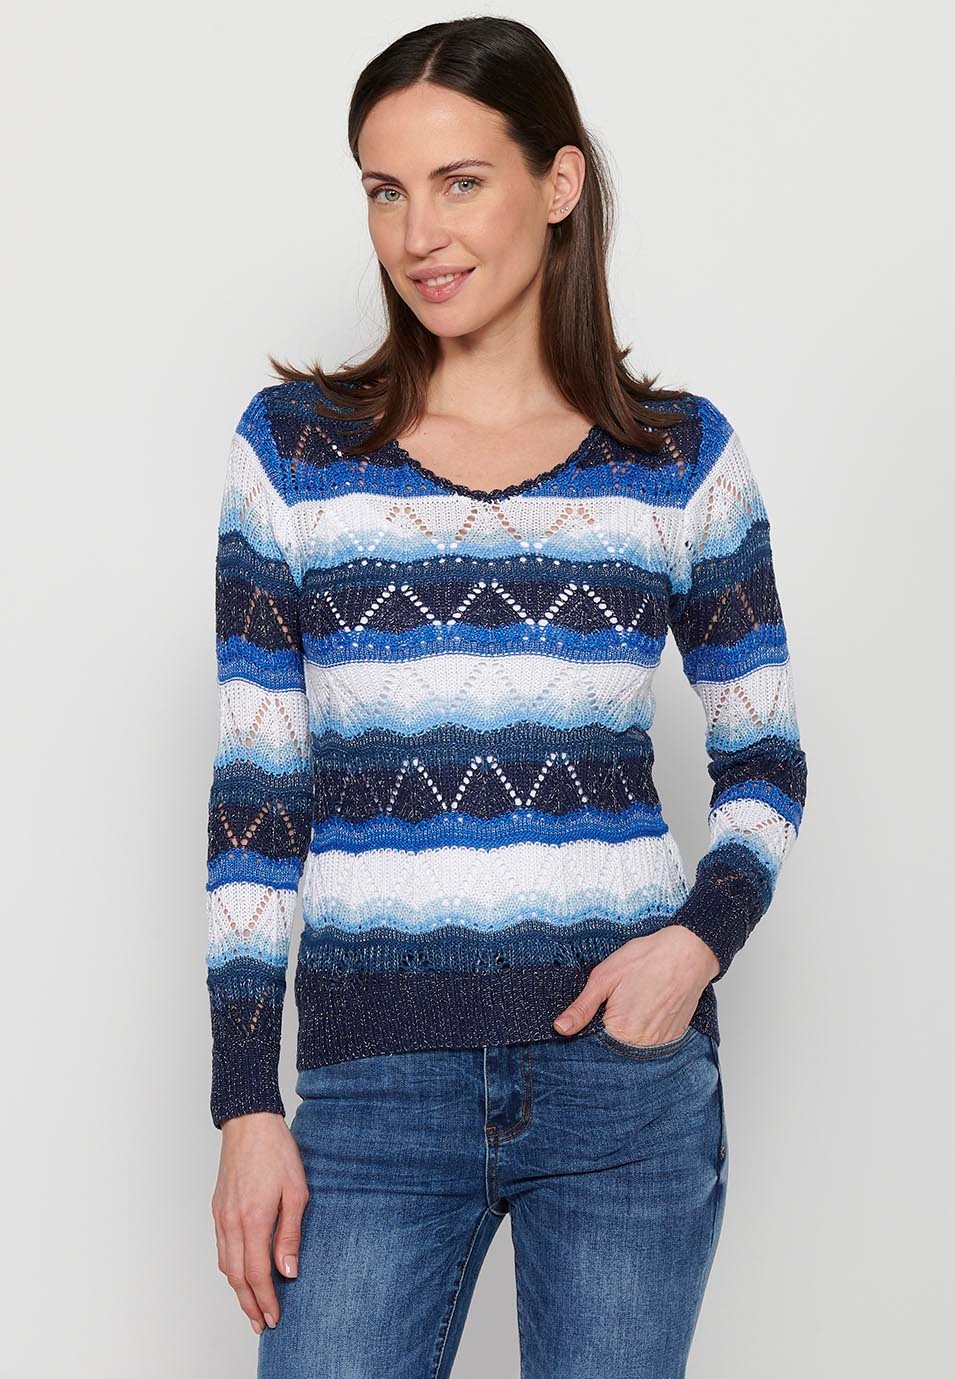 Long-sleeved, V-neck, navy striped sweater for women